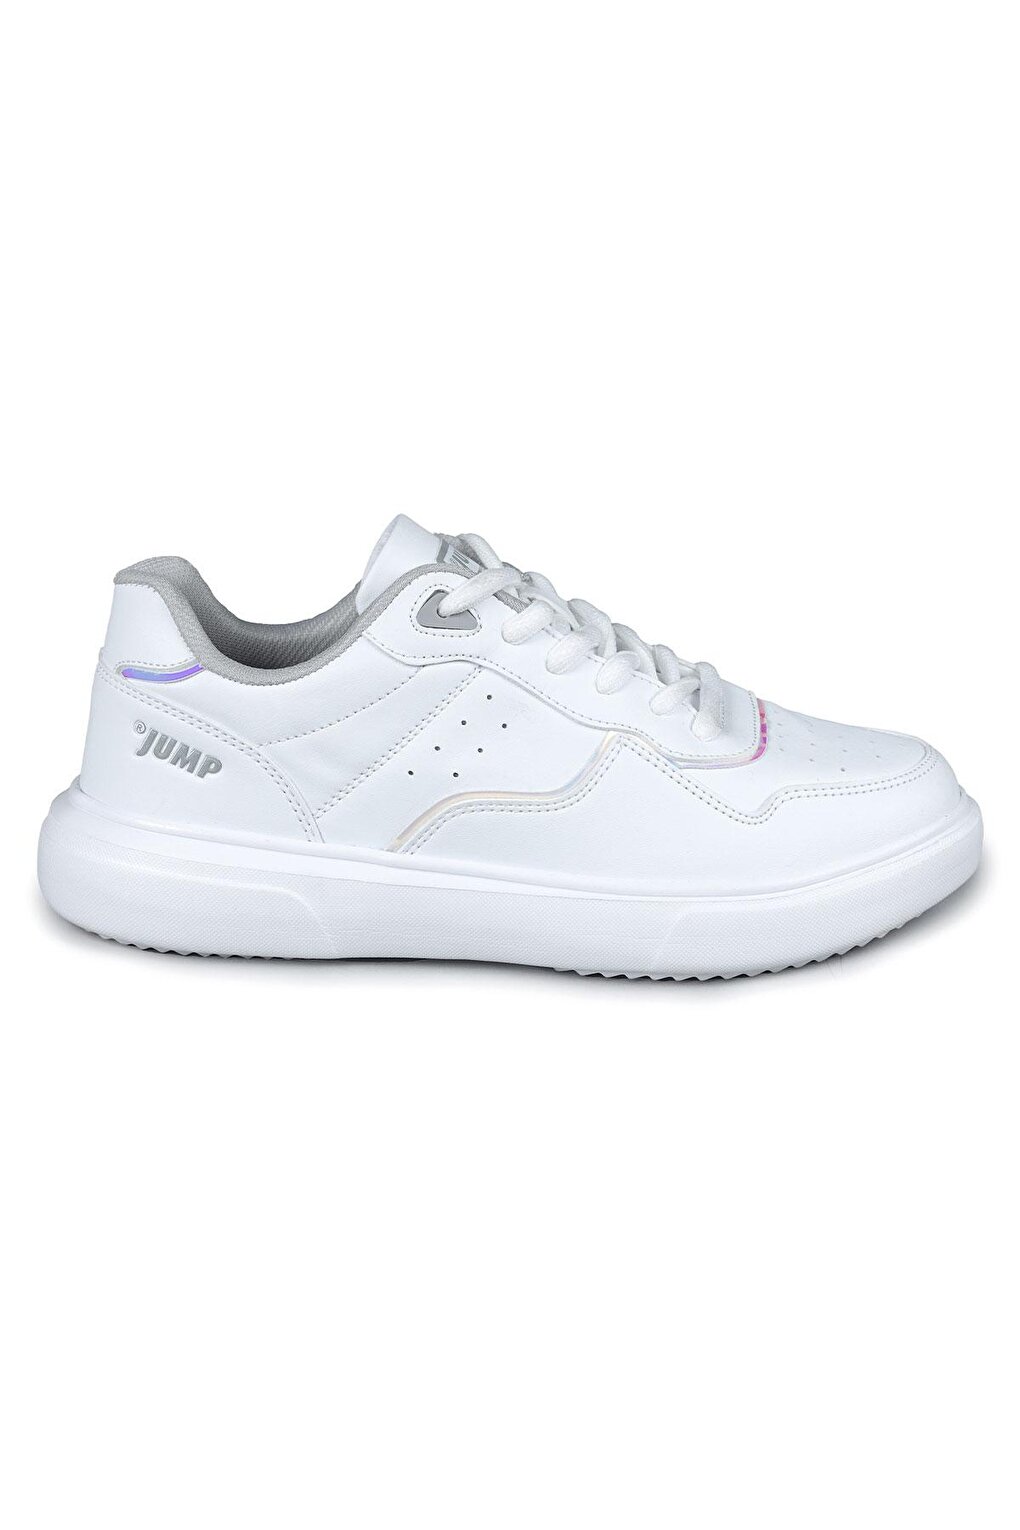 Женская спортивная обувь Jump, бело-серый